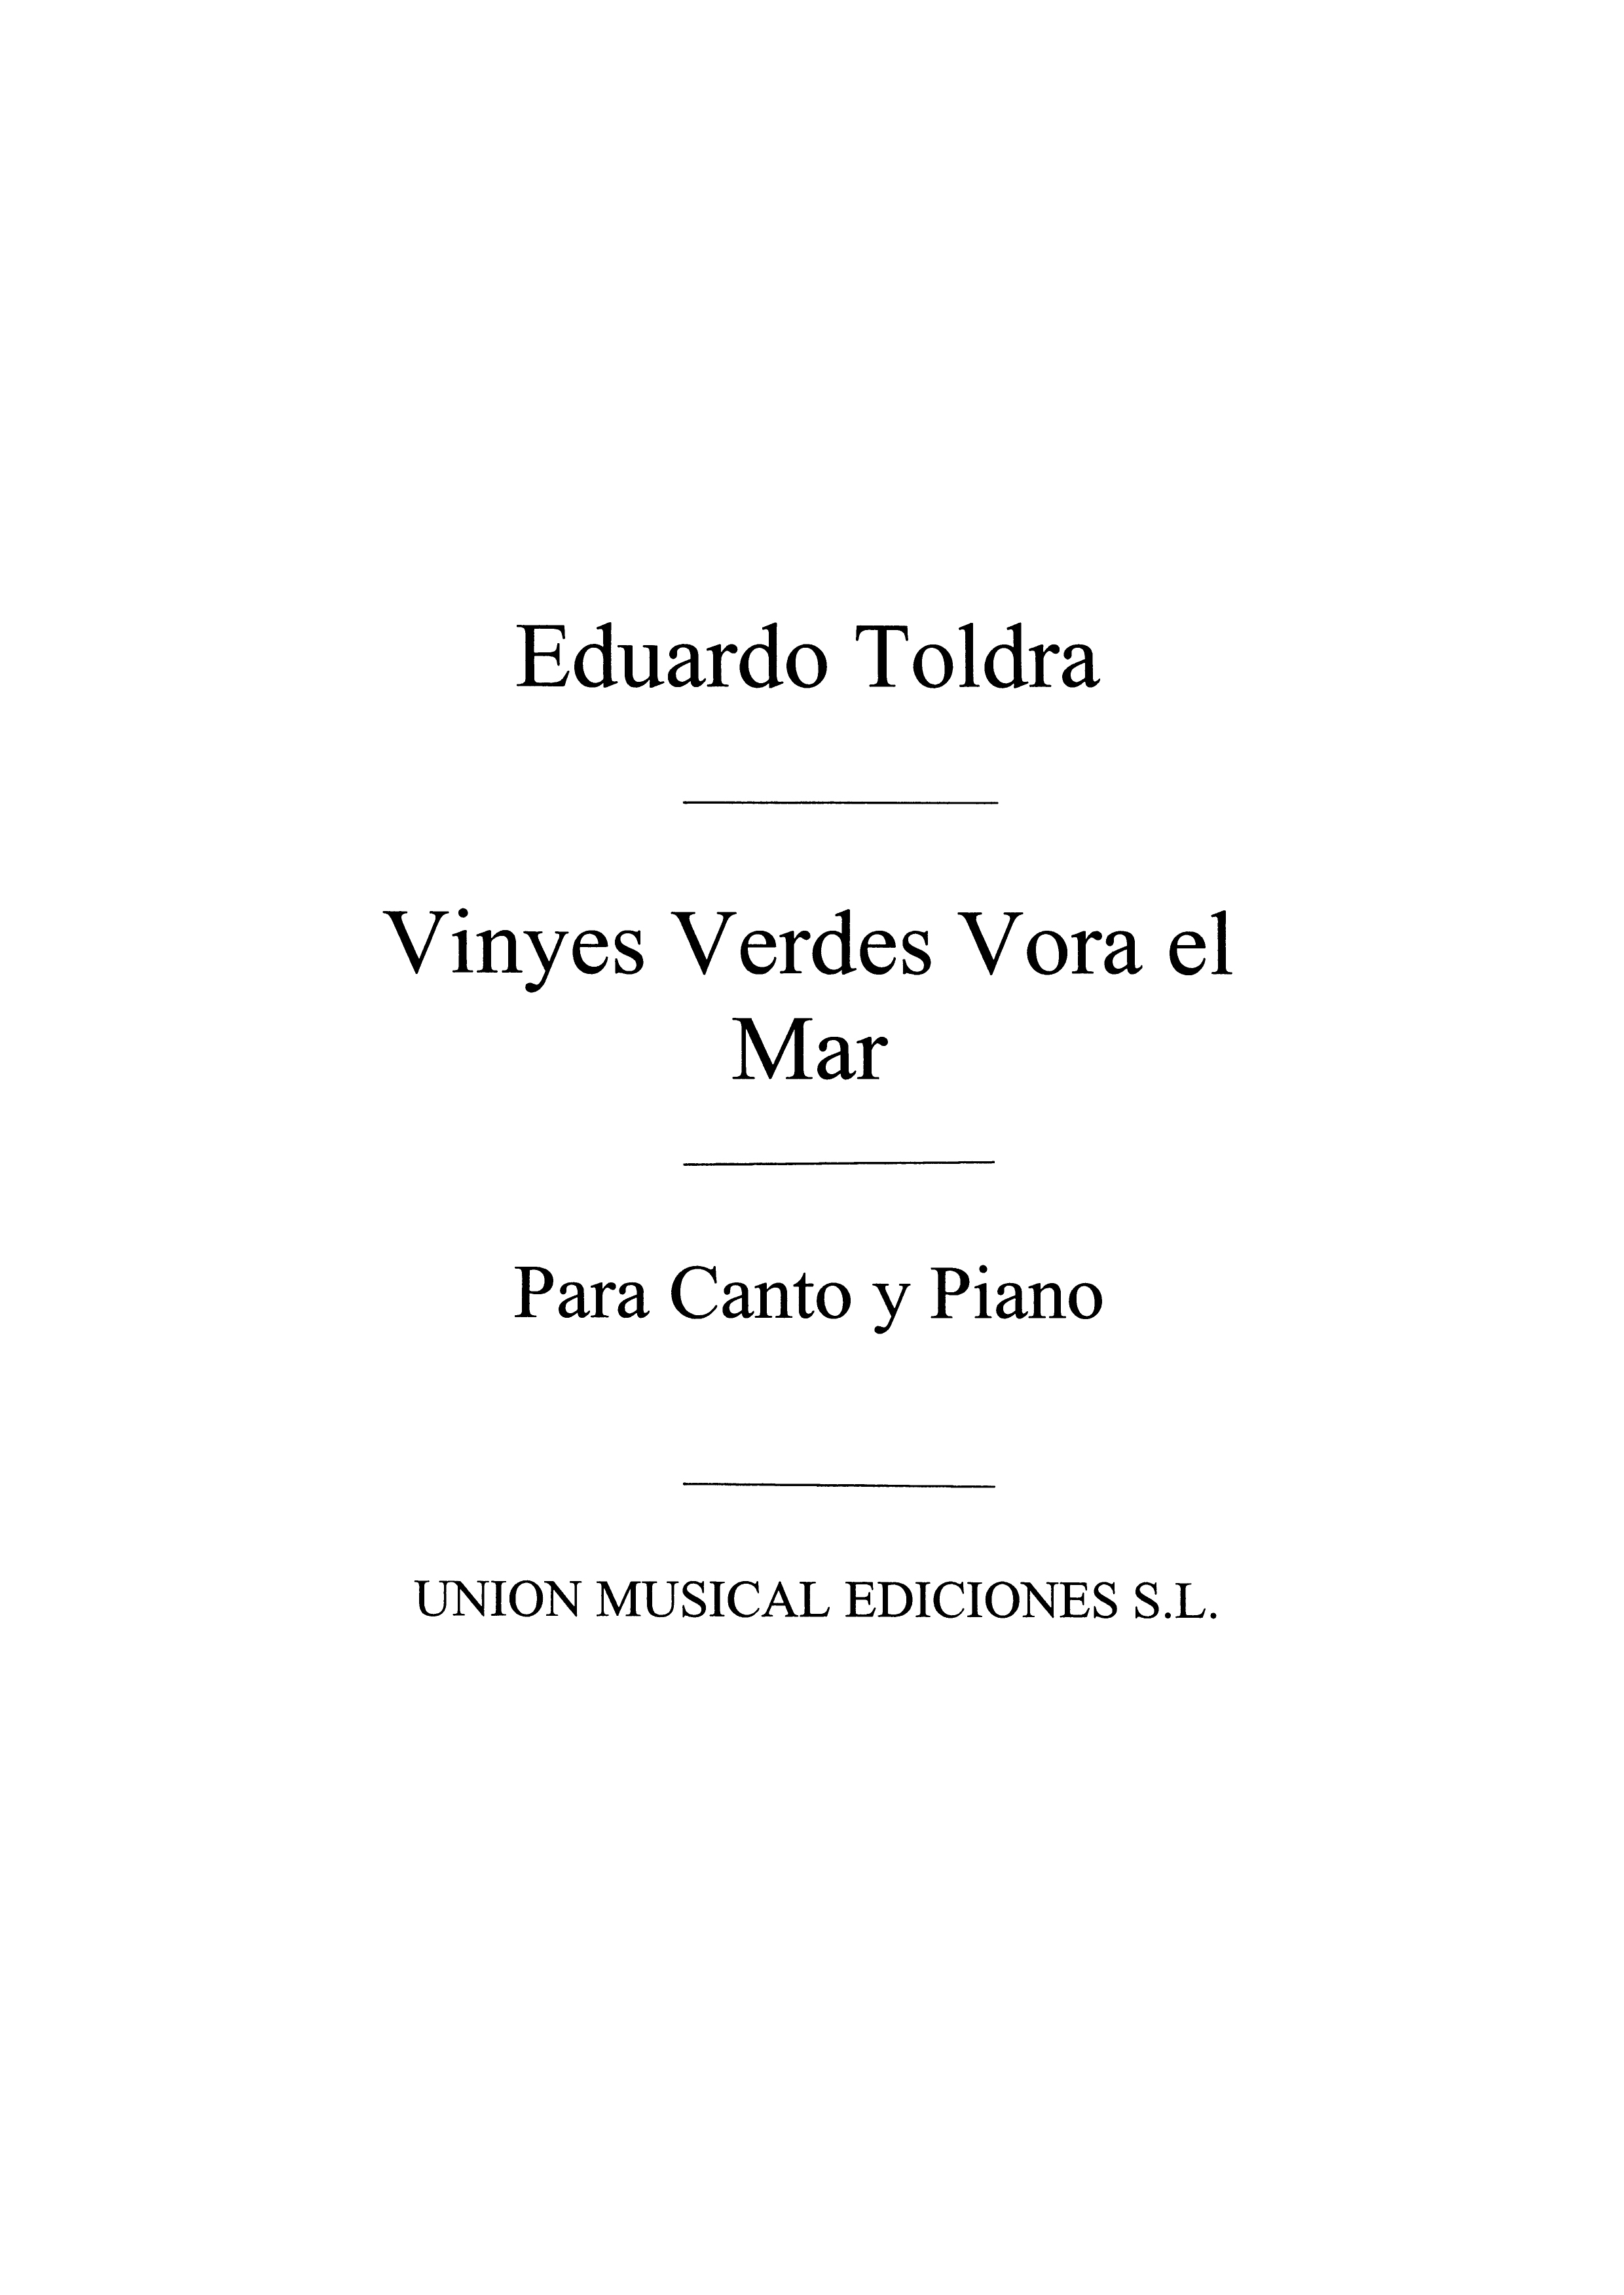 Eduardo Toldra: Vinyes Verdes Vora El Mar for Voice and Piano: Voice: